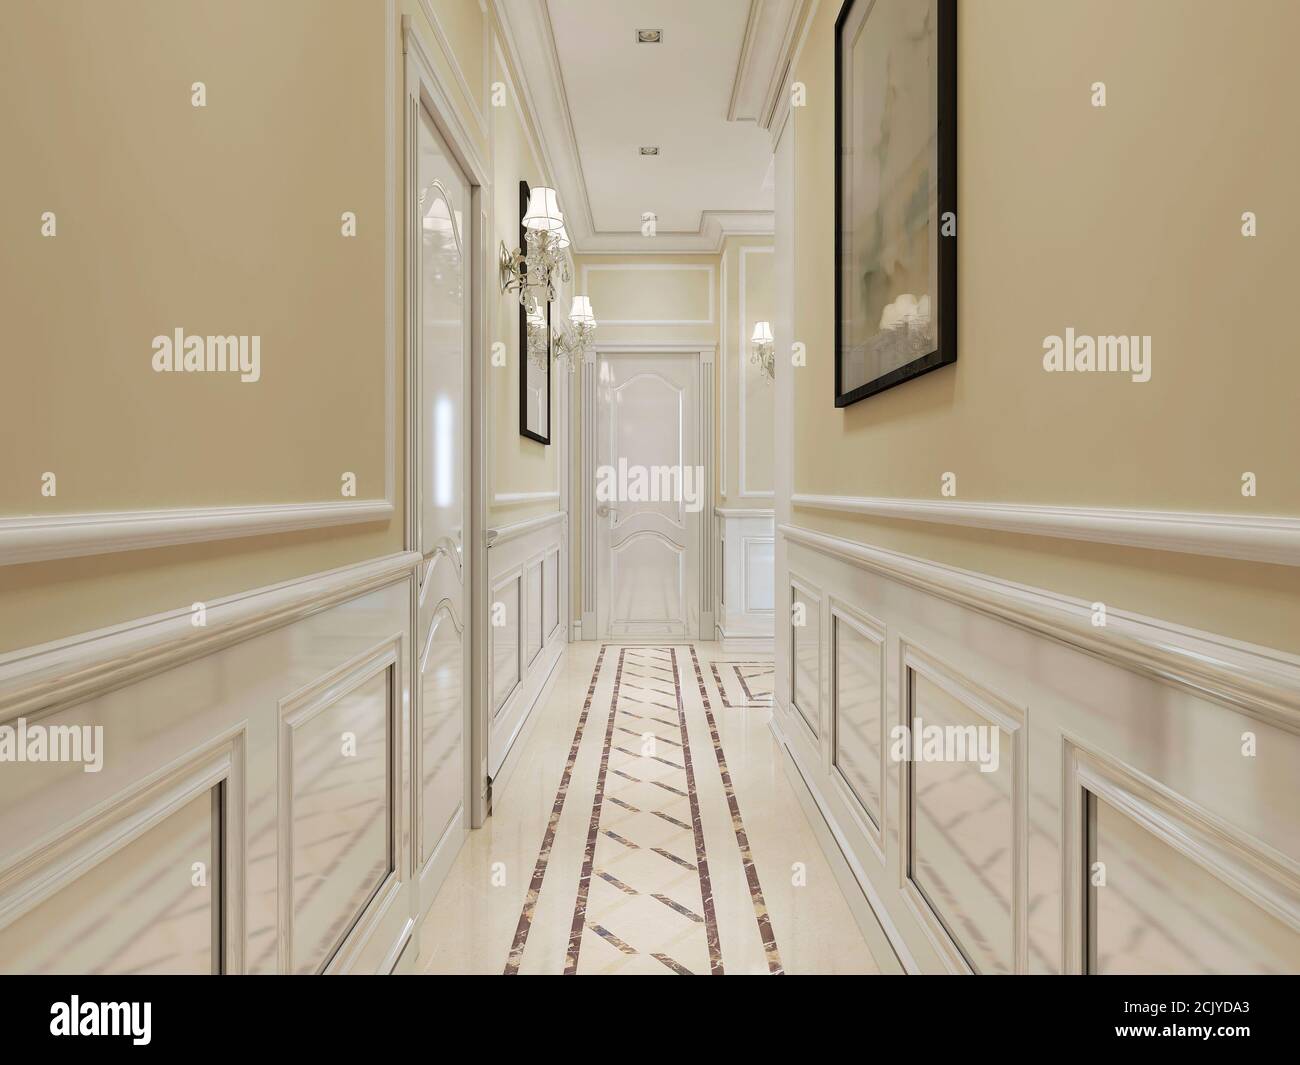 Couloir de style classique avec lambris en bois blanc sur les murs. Blanc, beige et jaune. Rendu 3D. Banque D'Images